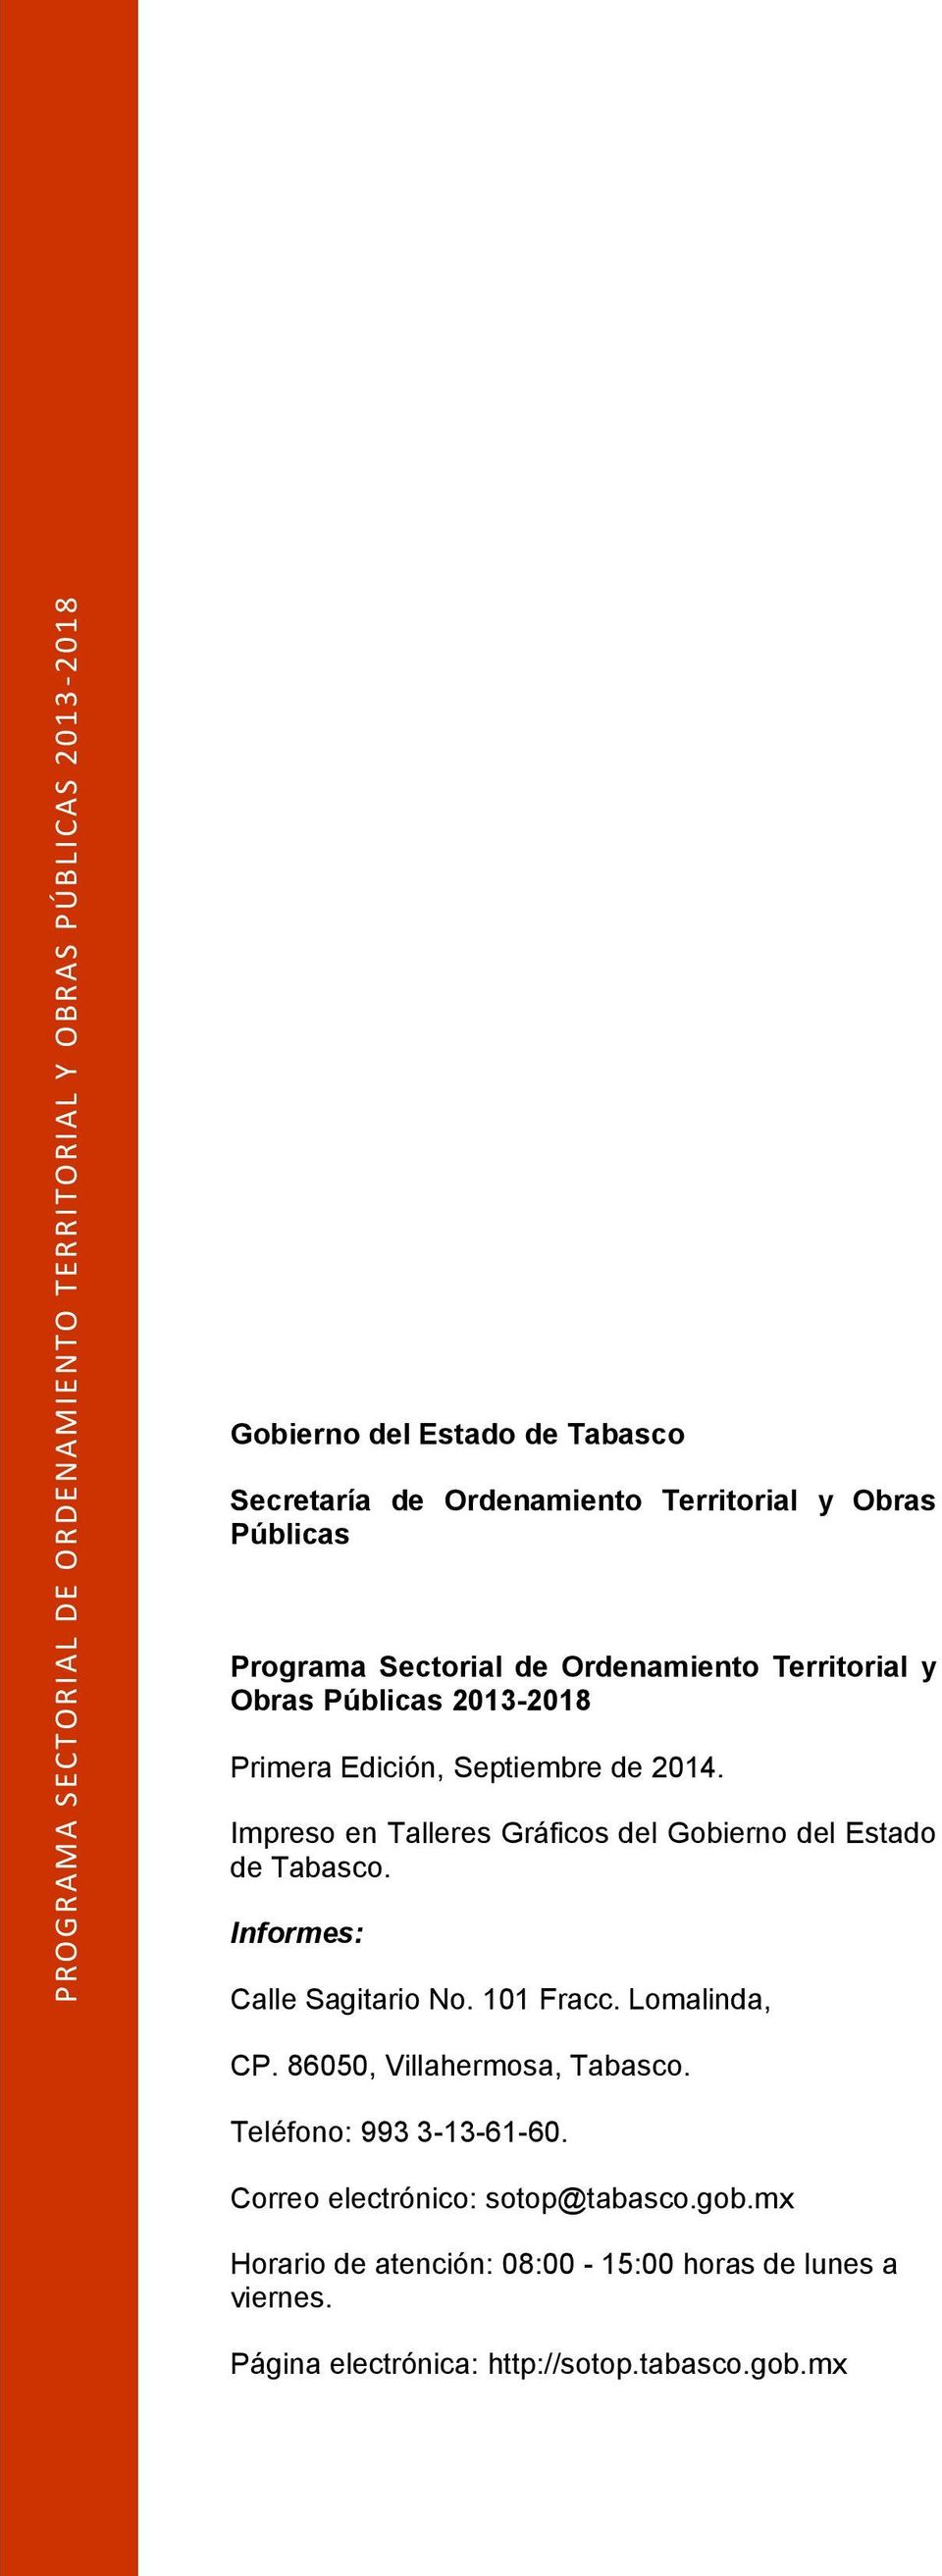 Impreso en Talleres Gráficos del Gobierno del Estado de Tabasco. Informes: Calle Sagitario No. 101 Fracc. Lomalinda, CP.